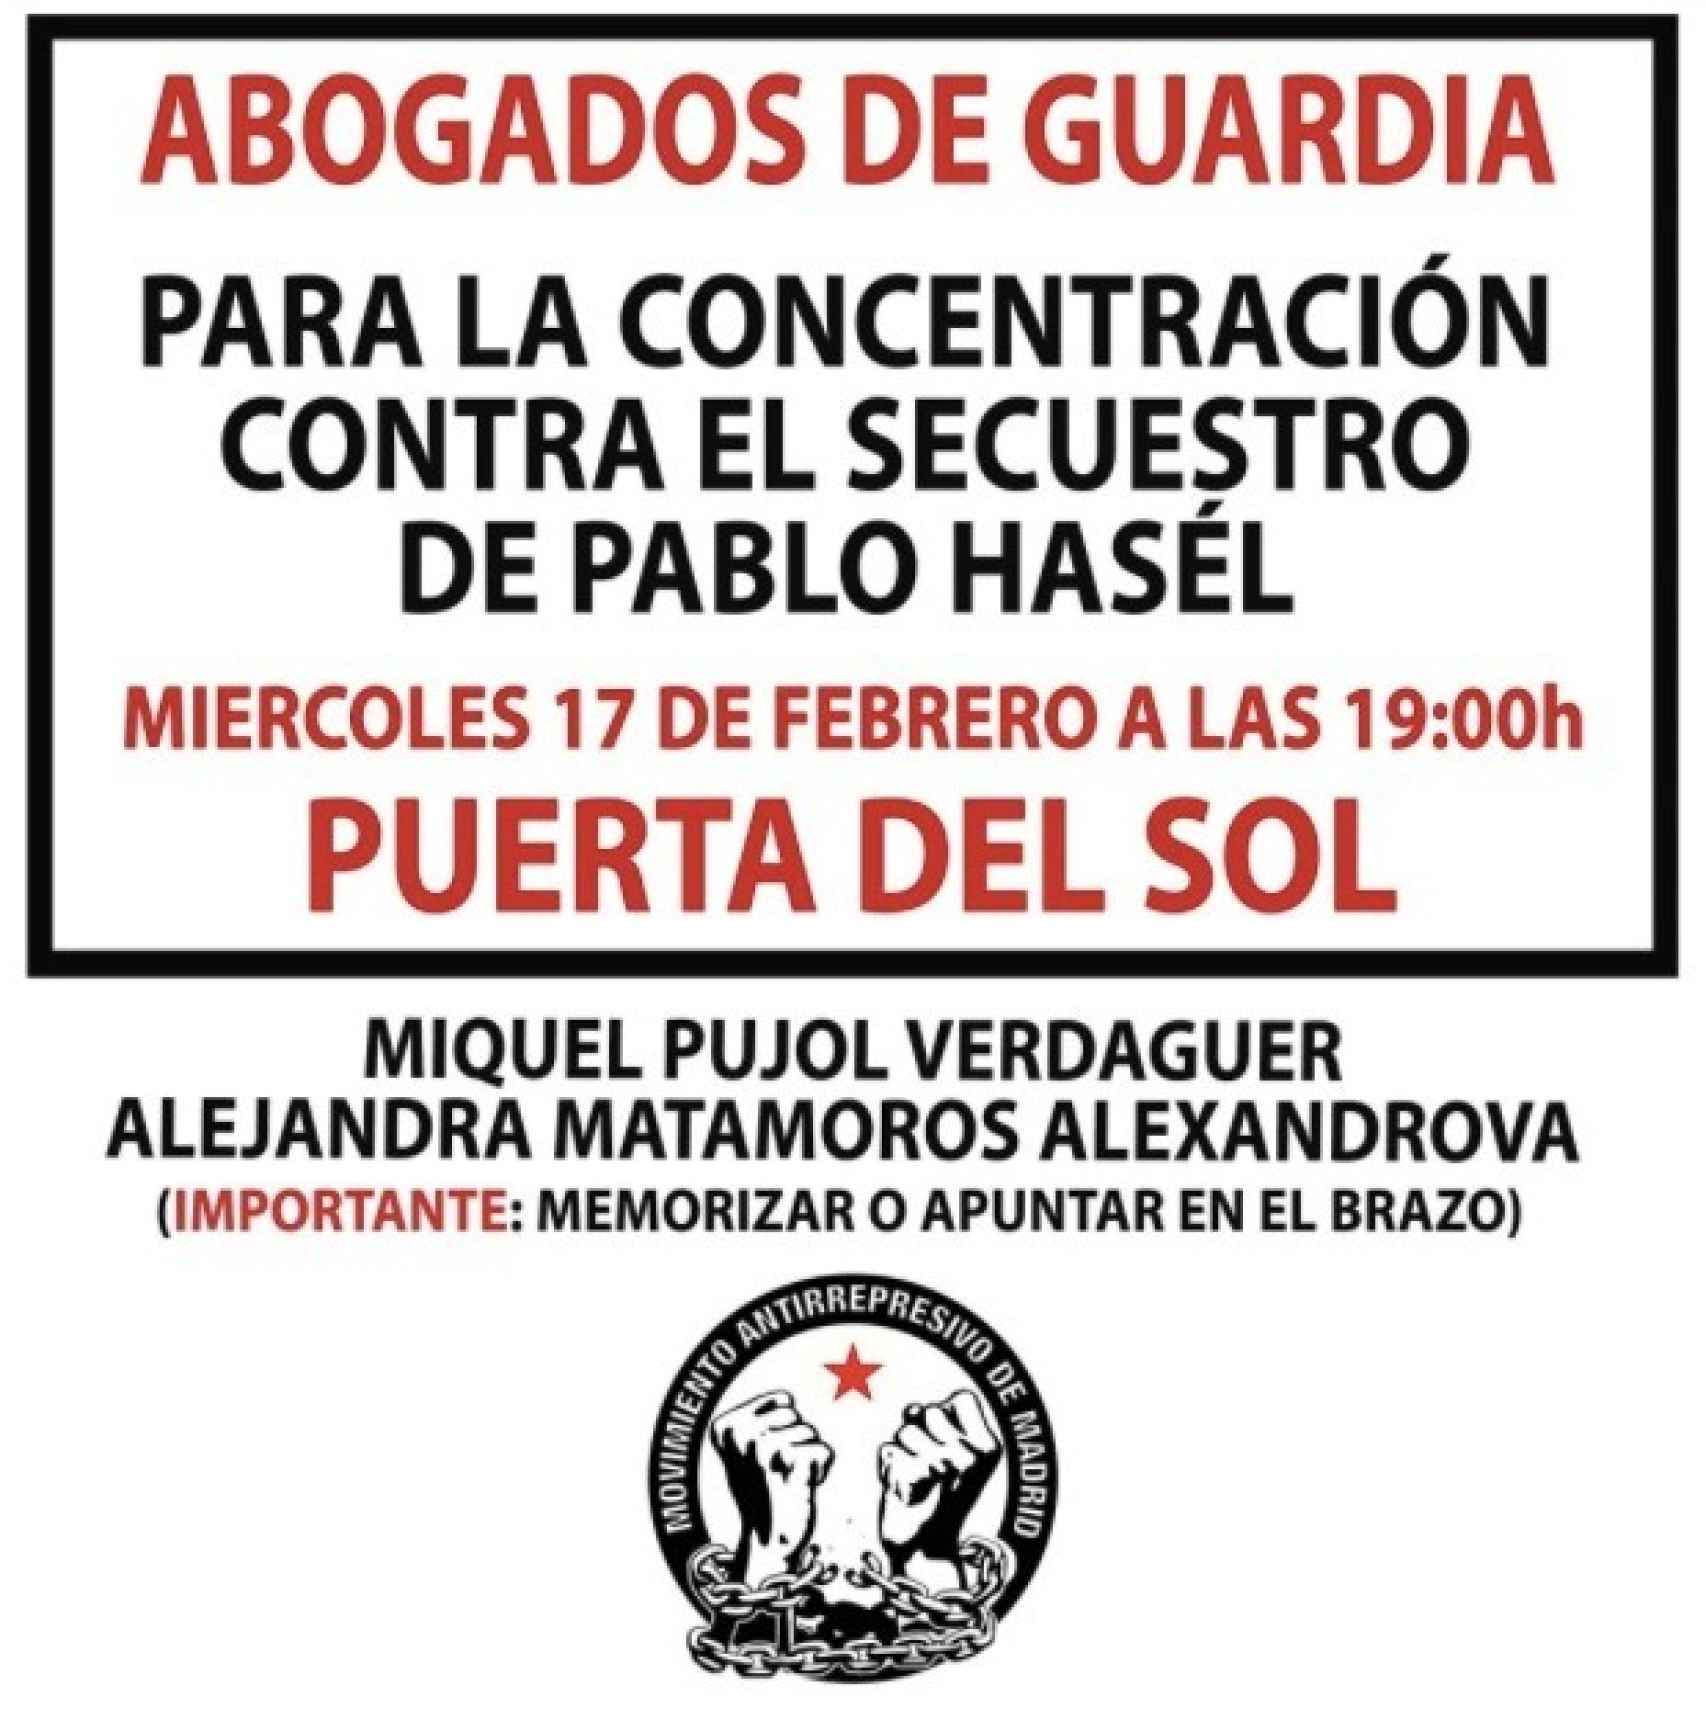 Cartel difundido por el Movimiento Antirrepresivo de Madrid en las protestas de Hasél.